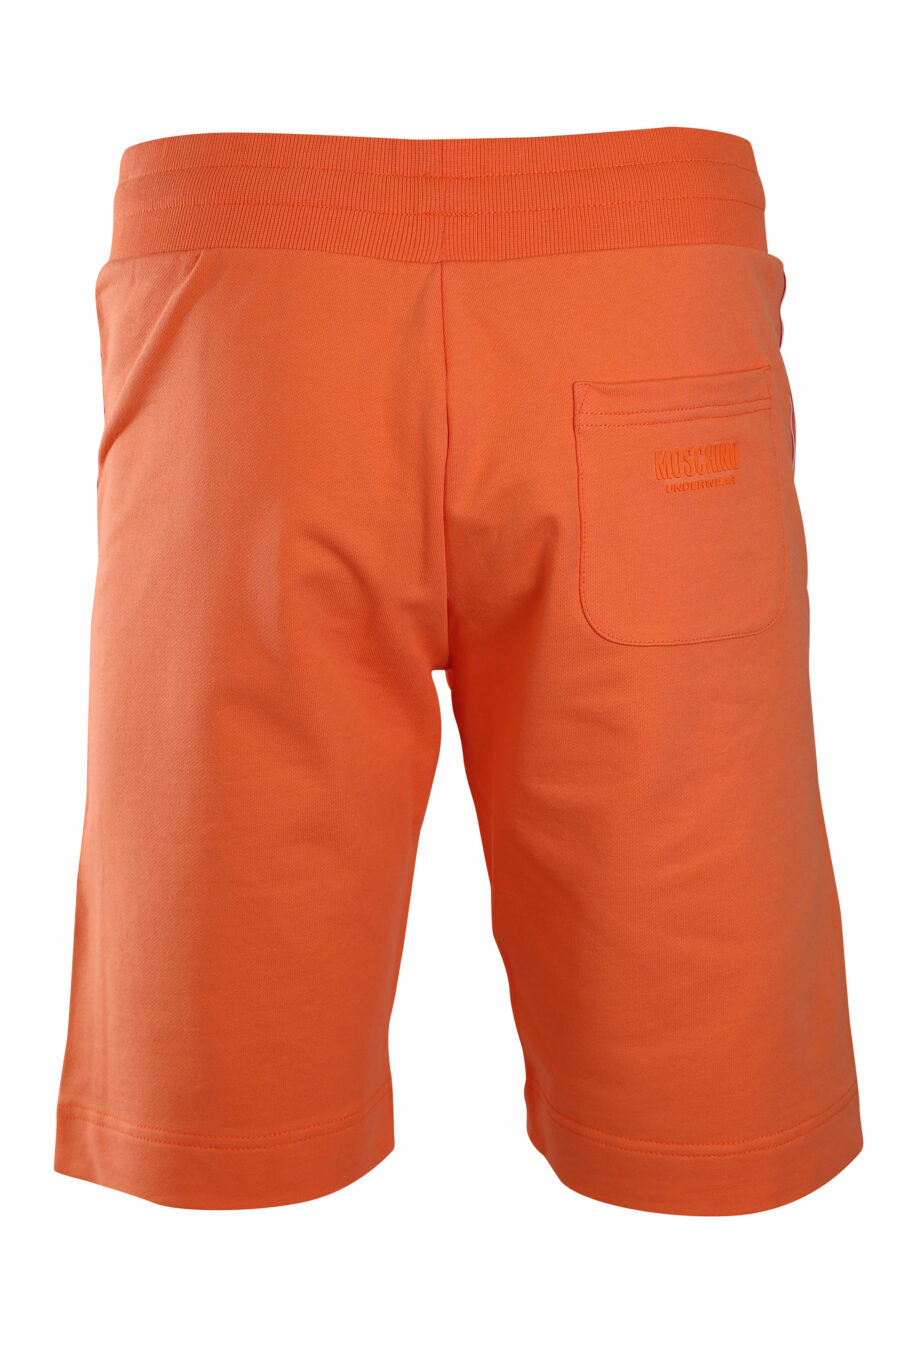 Pantalón de chándal corto naranja con logo en banda laterales - IMG 2211